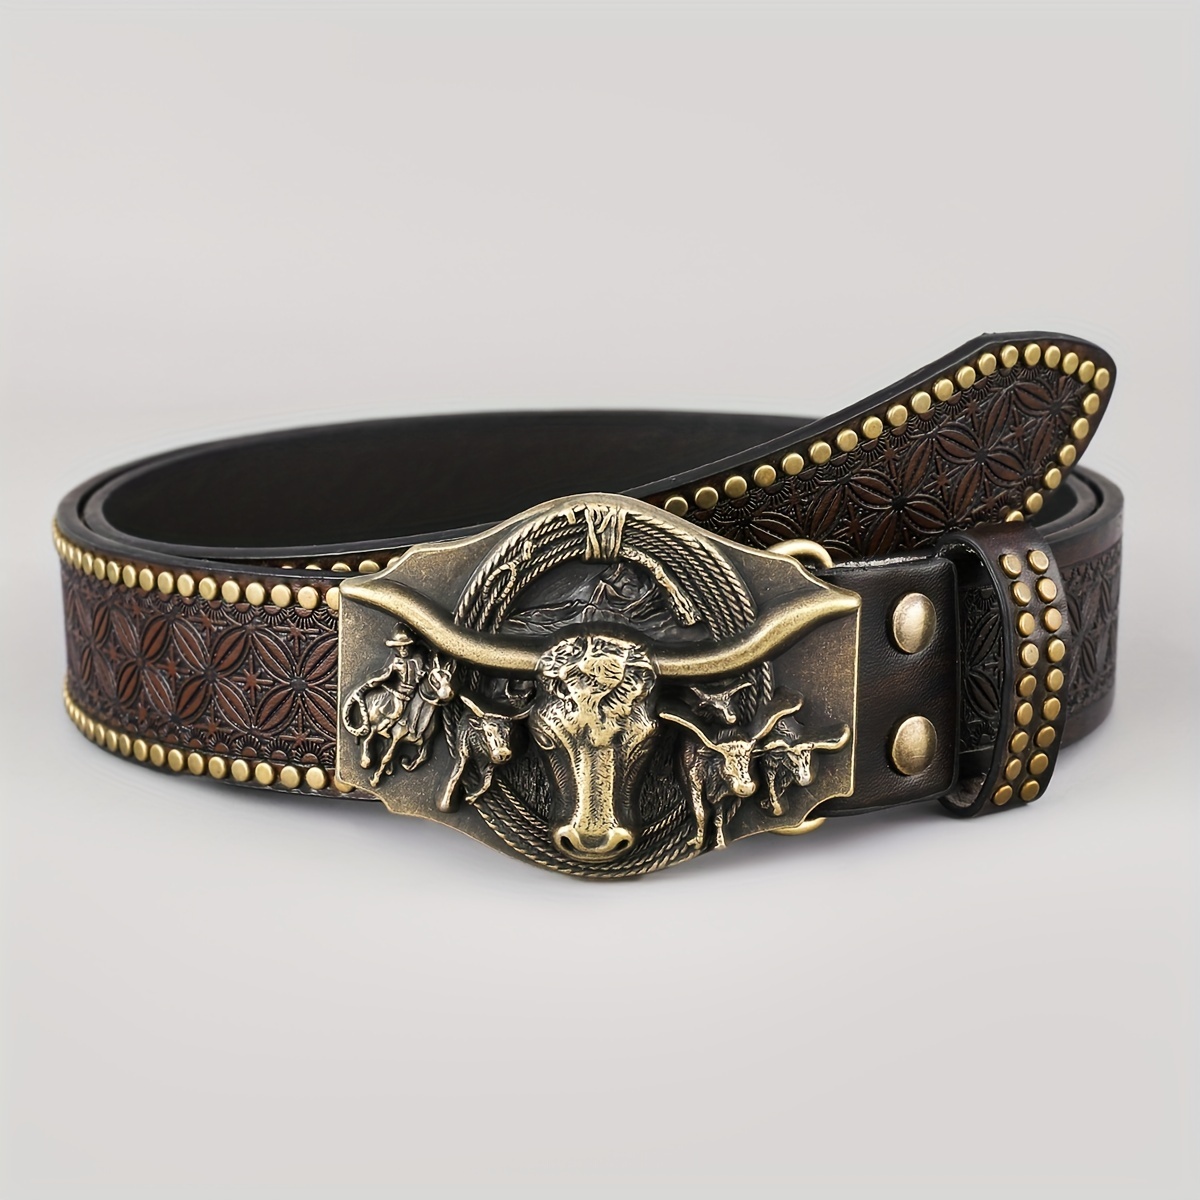 

Ceinture casual western cowboy embossée, ceinture tendance pour homme, choix idéal pour des cadeaux